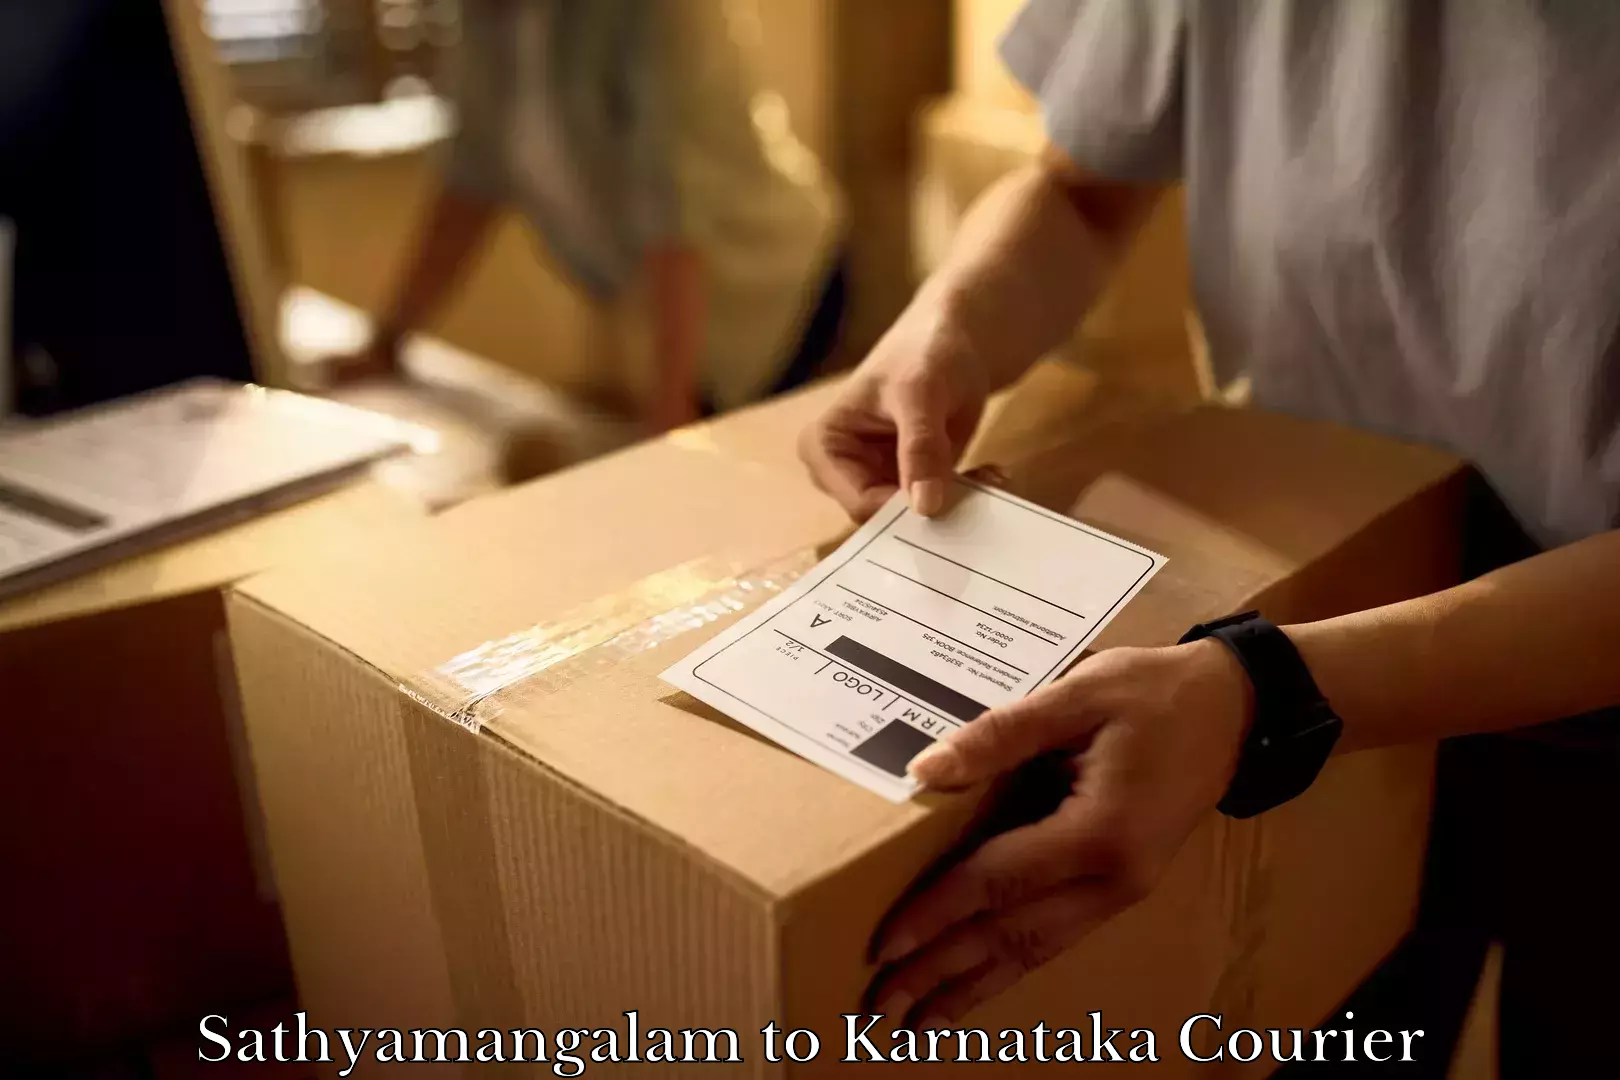 Furniture transport and storage Sathyamangalam to Karnataka